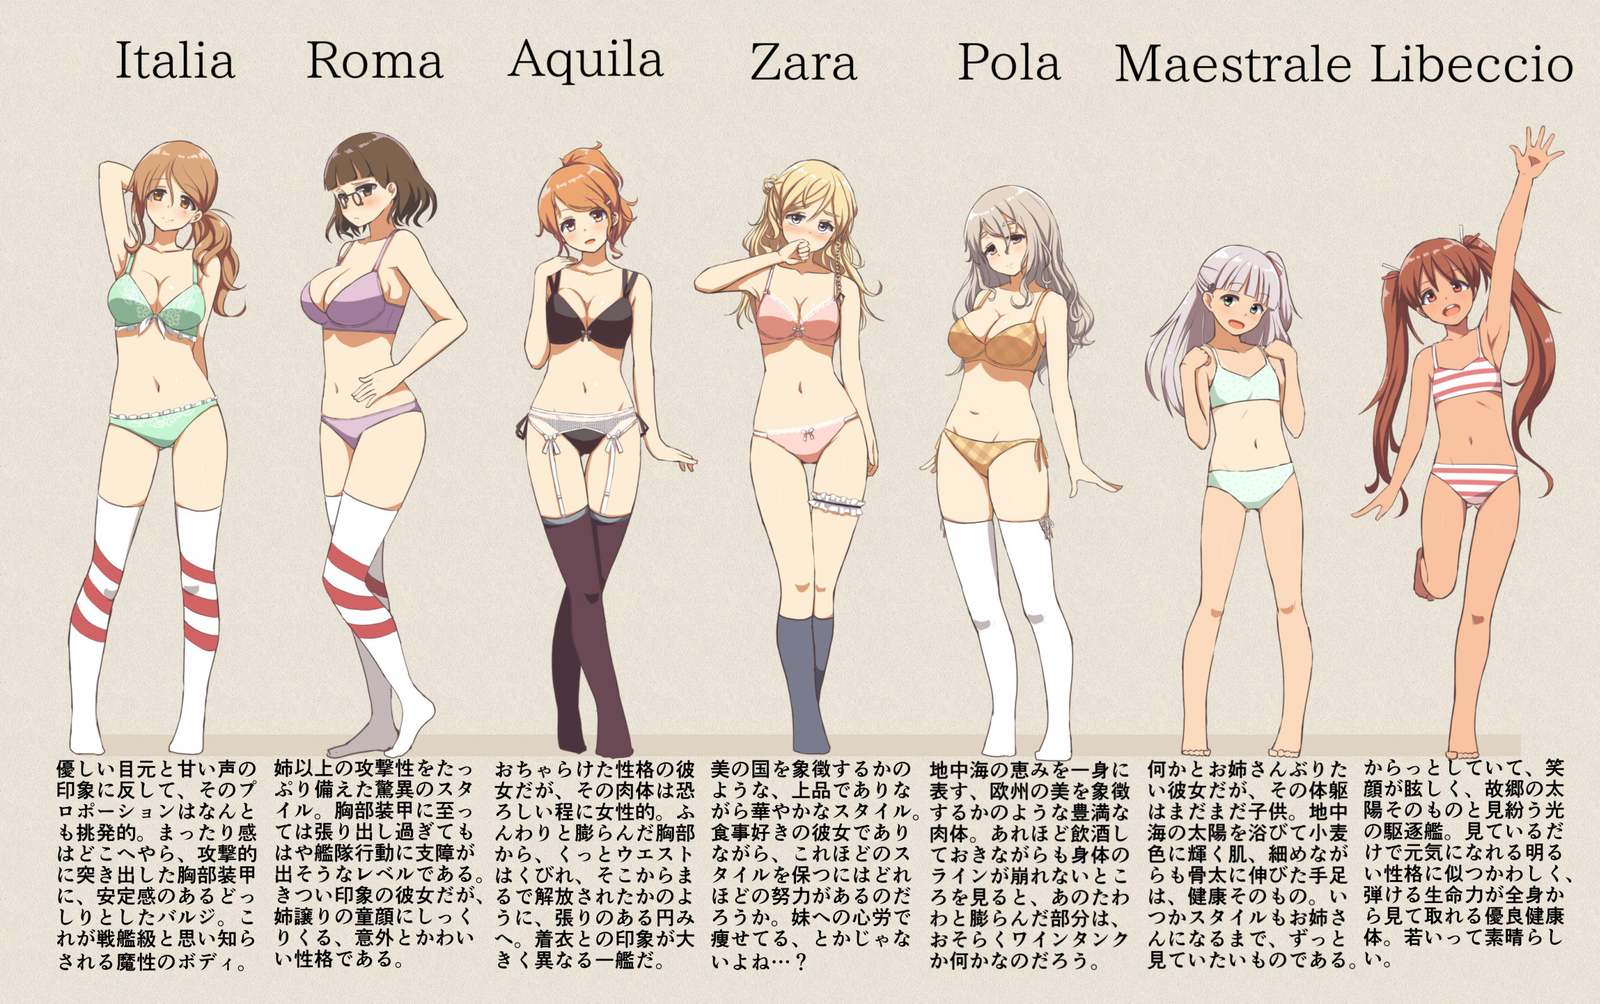 Italians - NSFW, Kantai collection, Underwear, Anime, Anime art, Zara, Pola, Aquila, Littorio